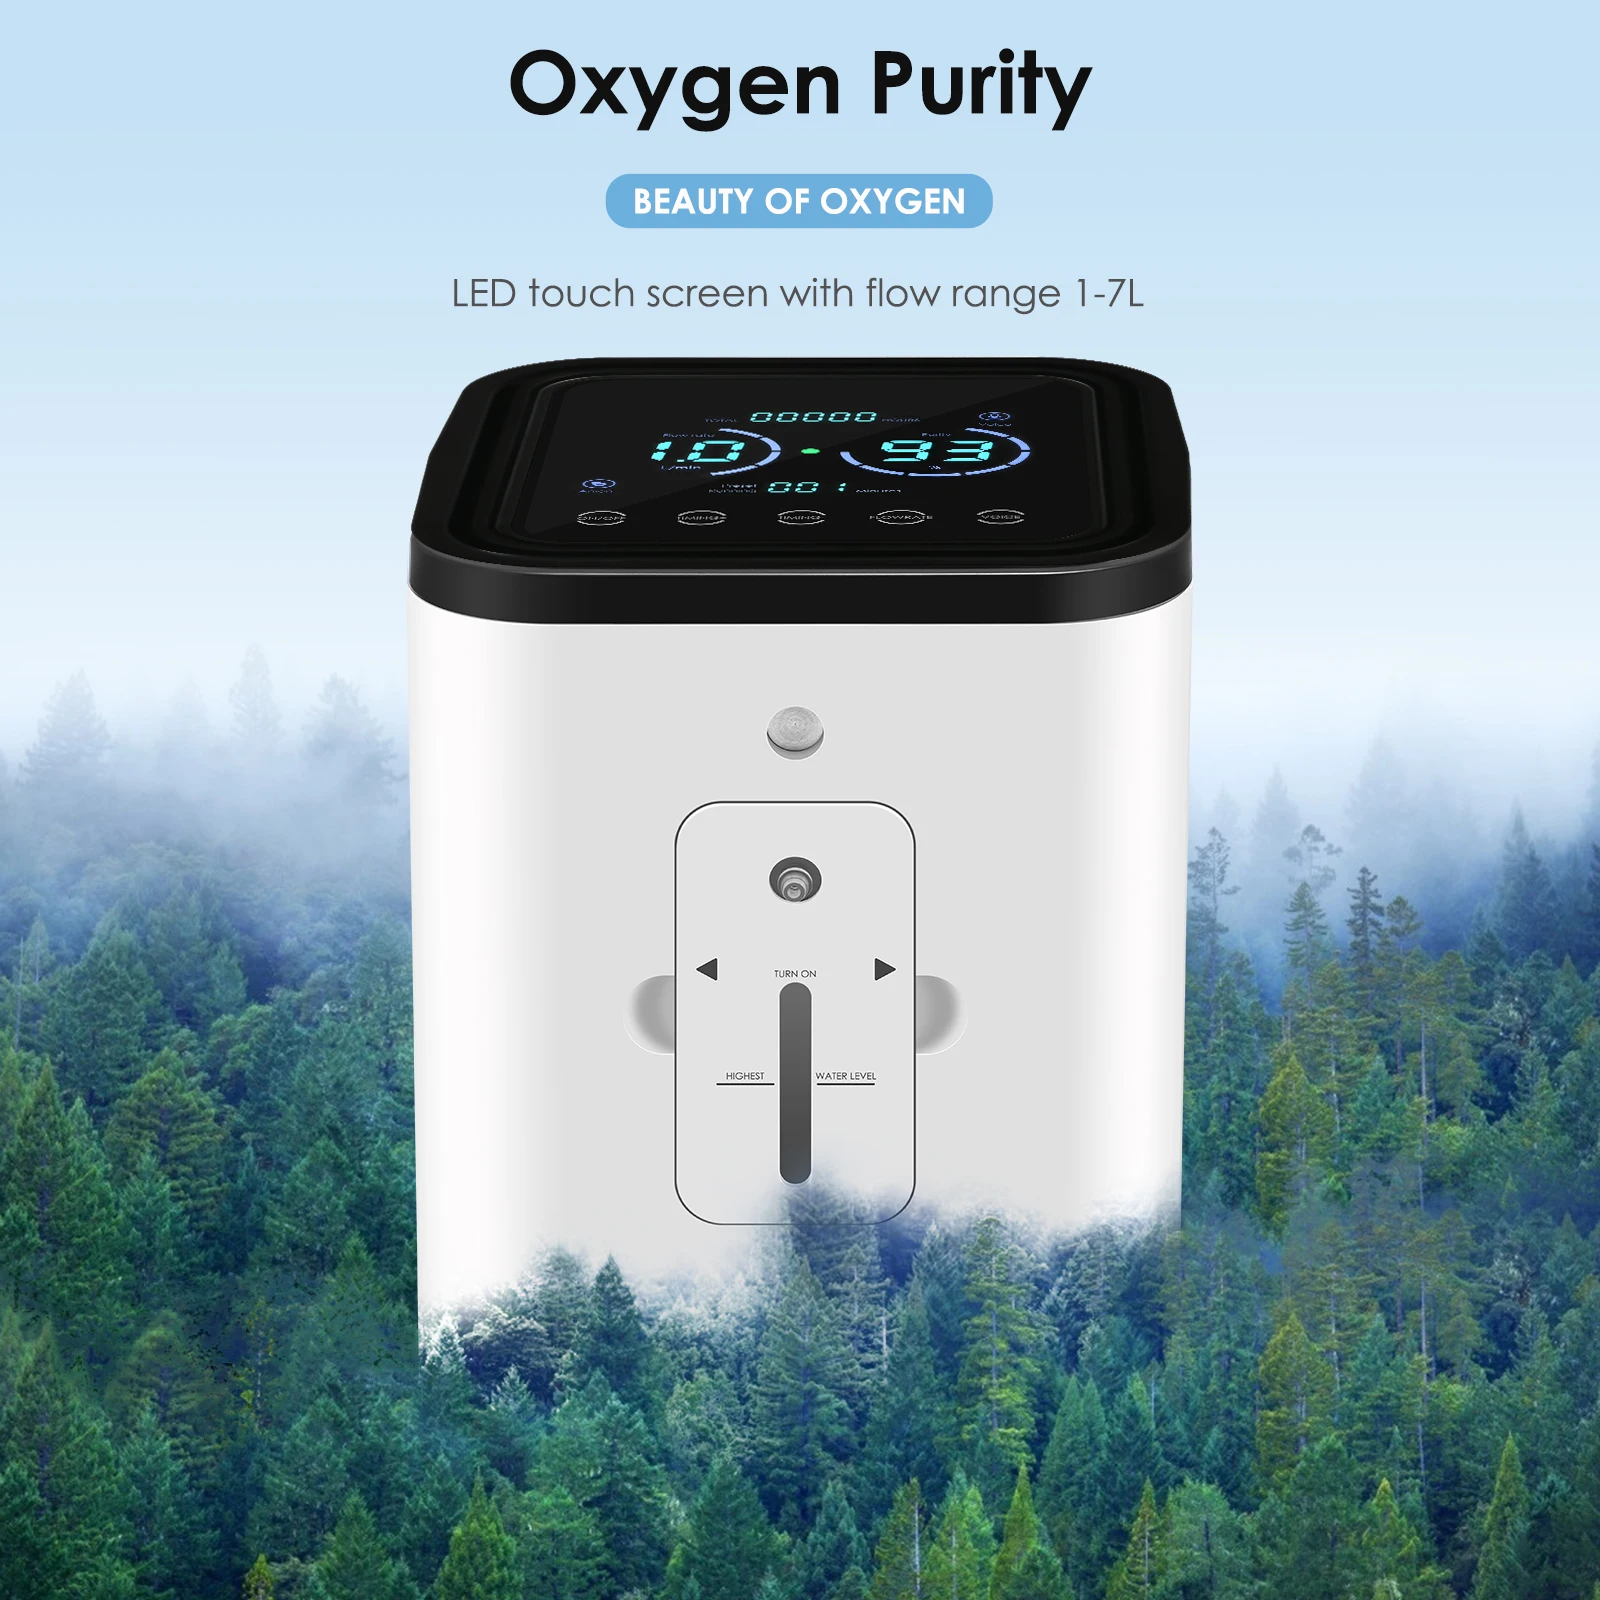 

AUPORO 30%-90% кислородная чистота 1-7 л/мин кислородный концентратор машина высокого качества с низким уровнем шума для медицинского и техническо...